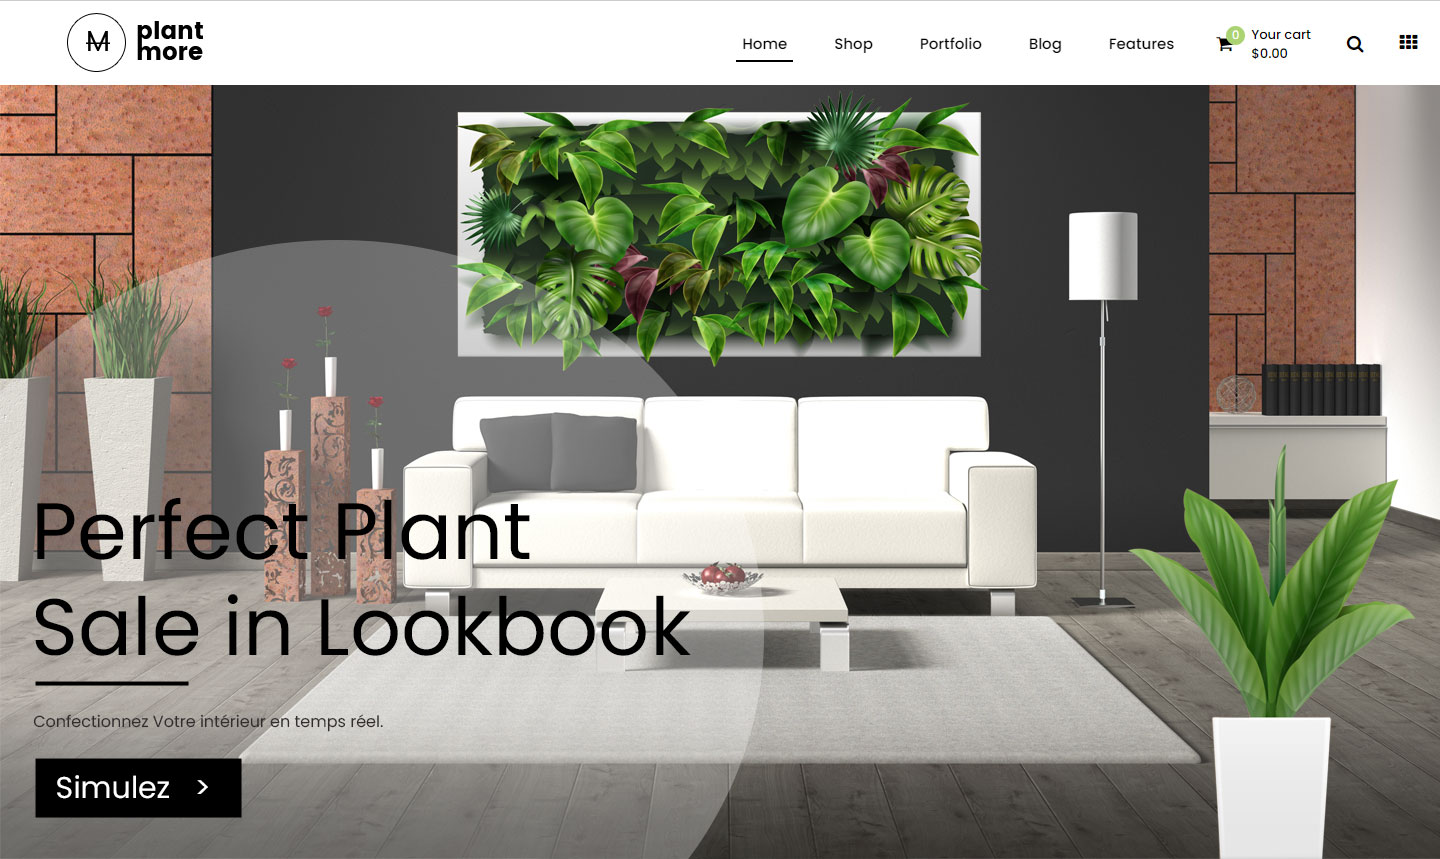  photo de site web entreprise de vegetal stabilise illustré start up